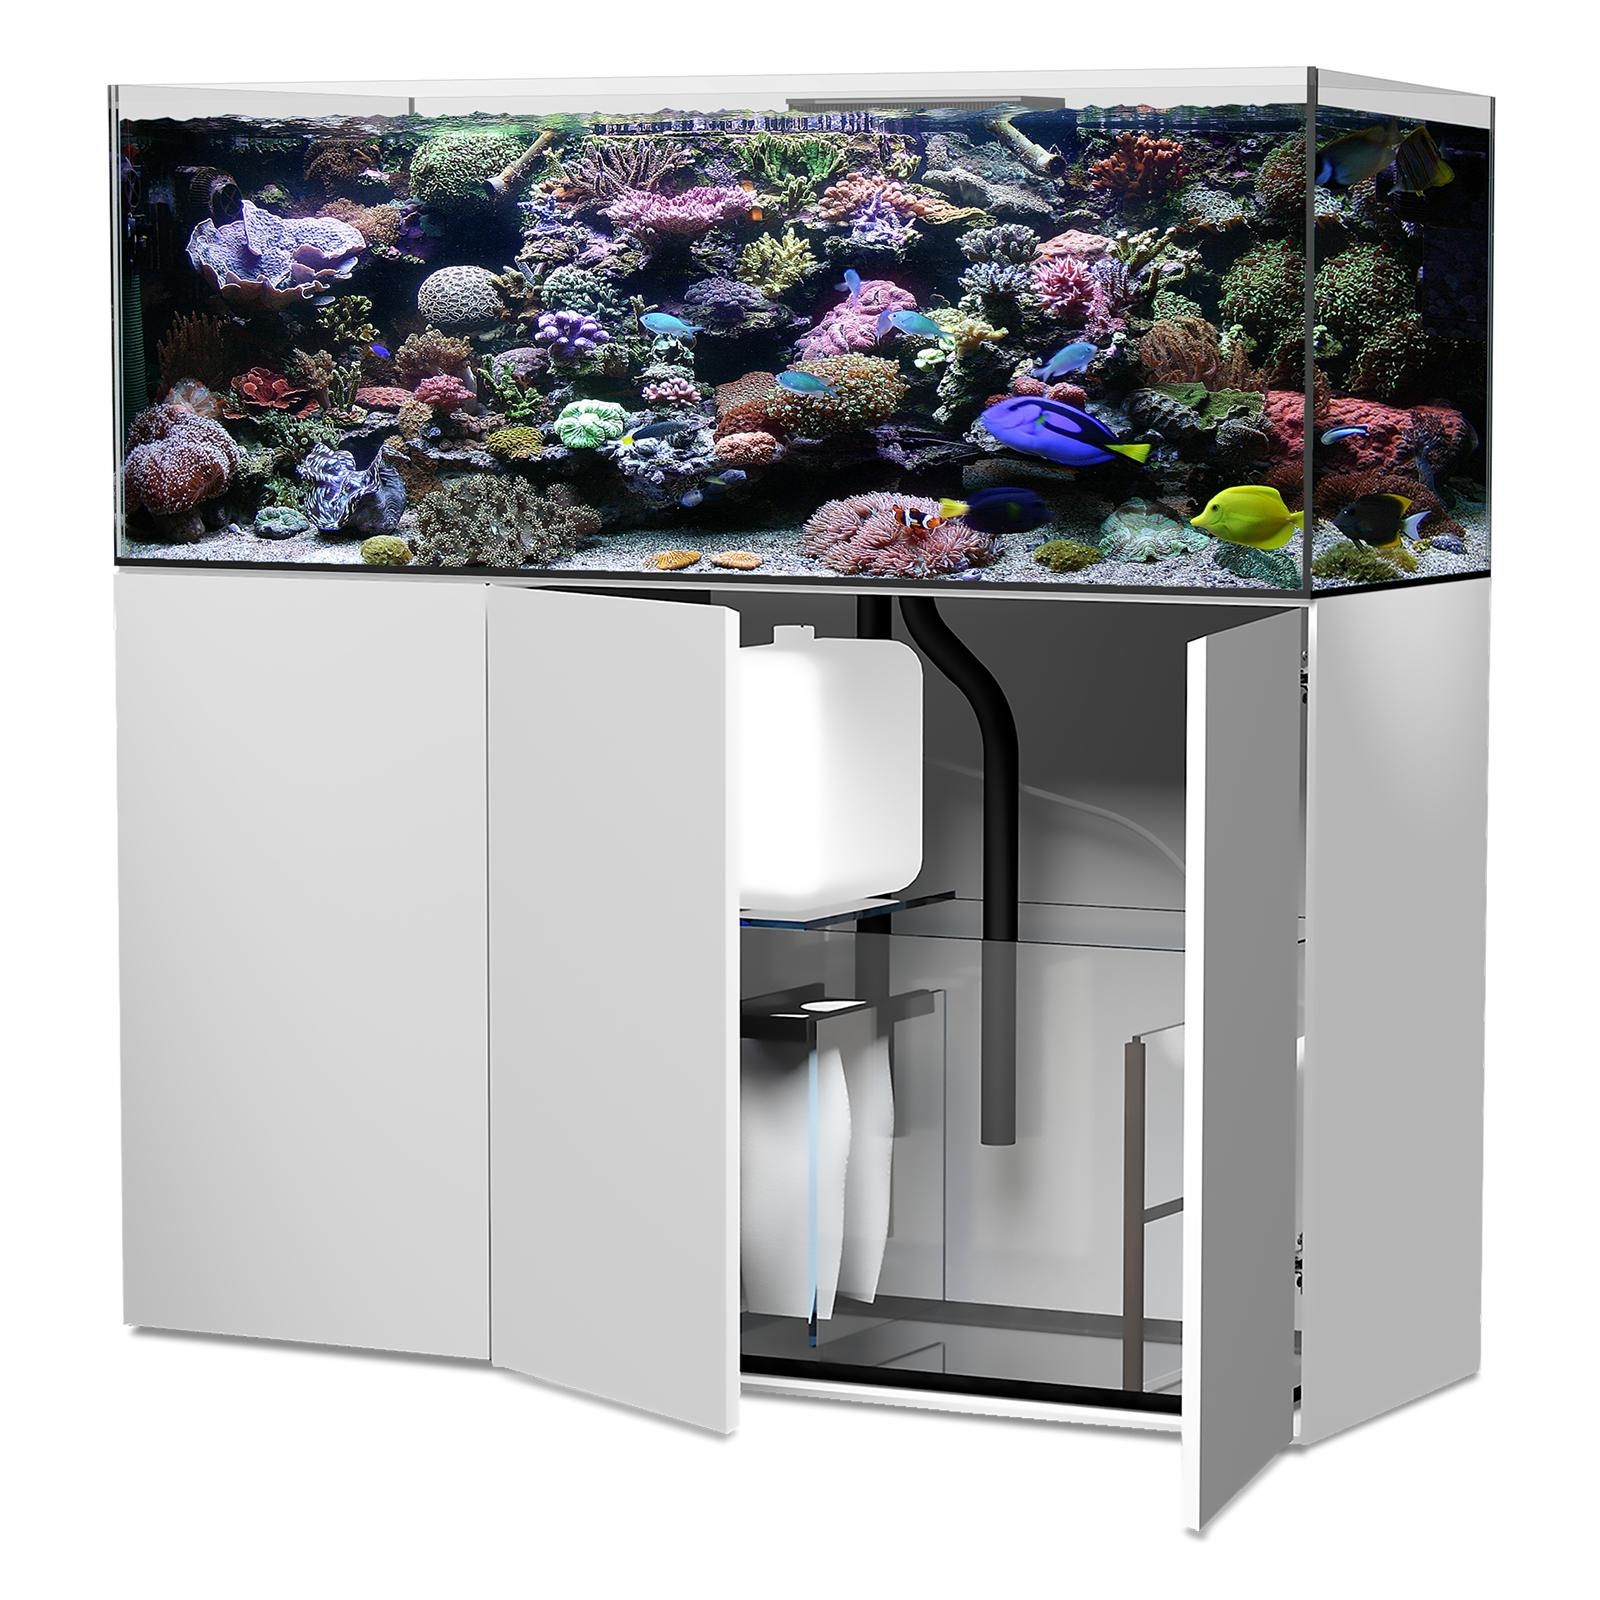  Aqua Medic Aquarium - Armatus 350 XD white